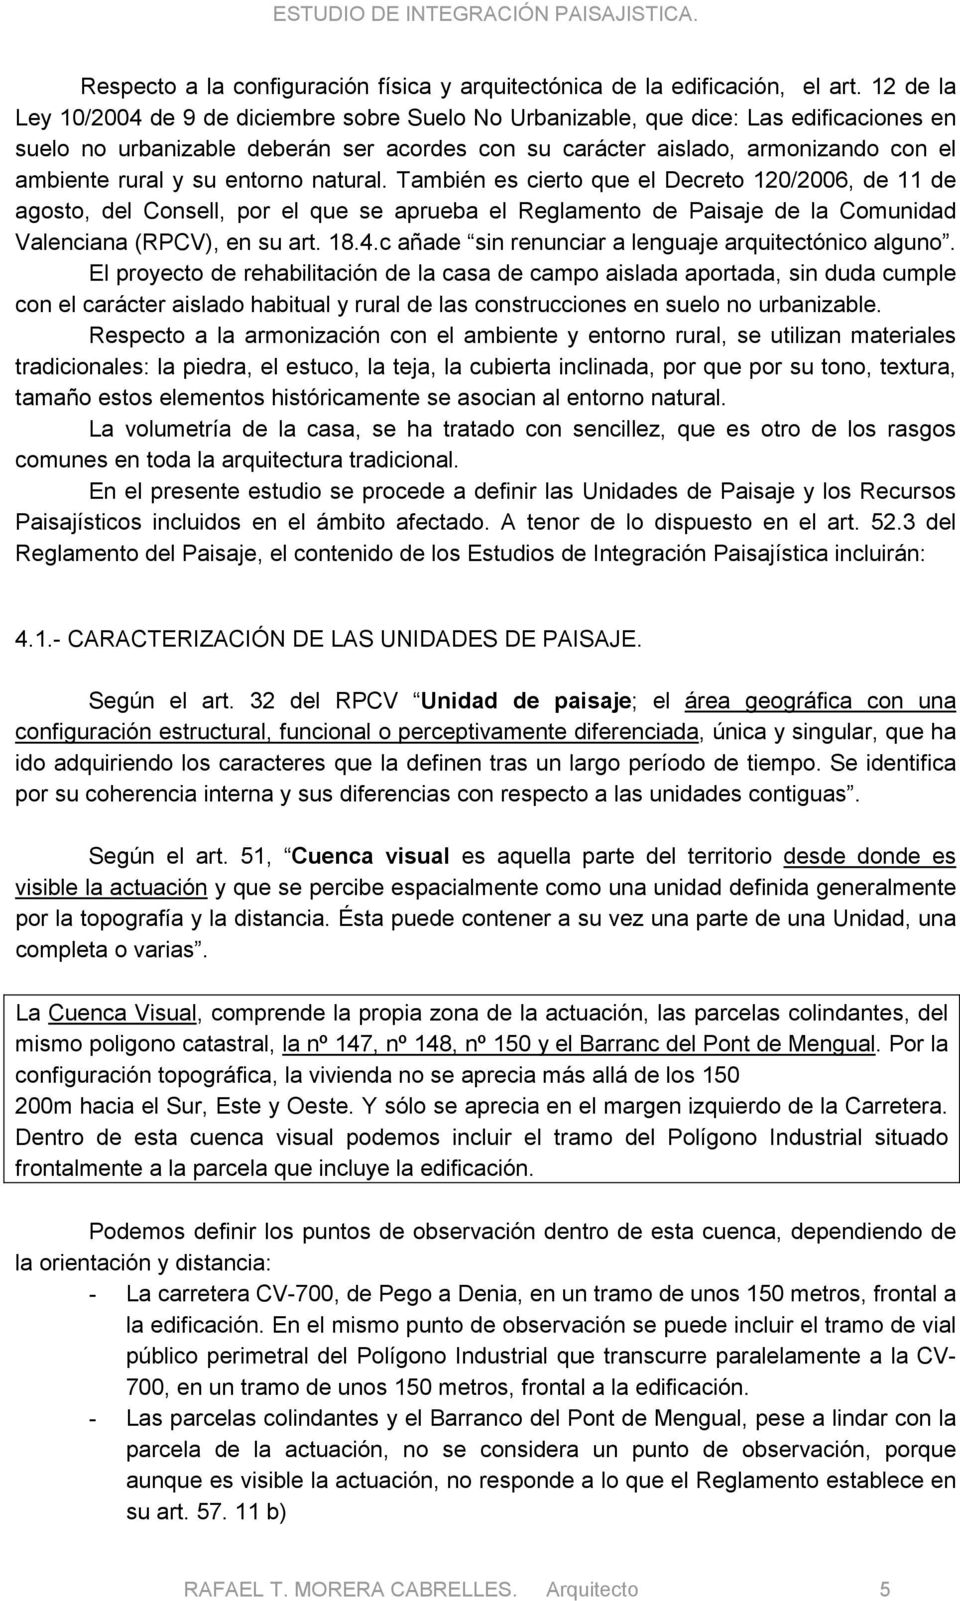 su entorno natural. También es cierto que el Decreto 120/2006, de 11 de agosto, del Consell, por el que se aprueba el Reglamento de Paisaje de la Comunidad Valenciana (RPCV), en su art. 18.4.